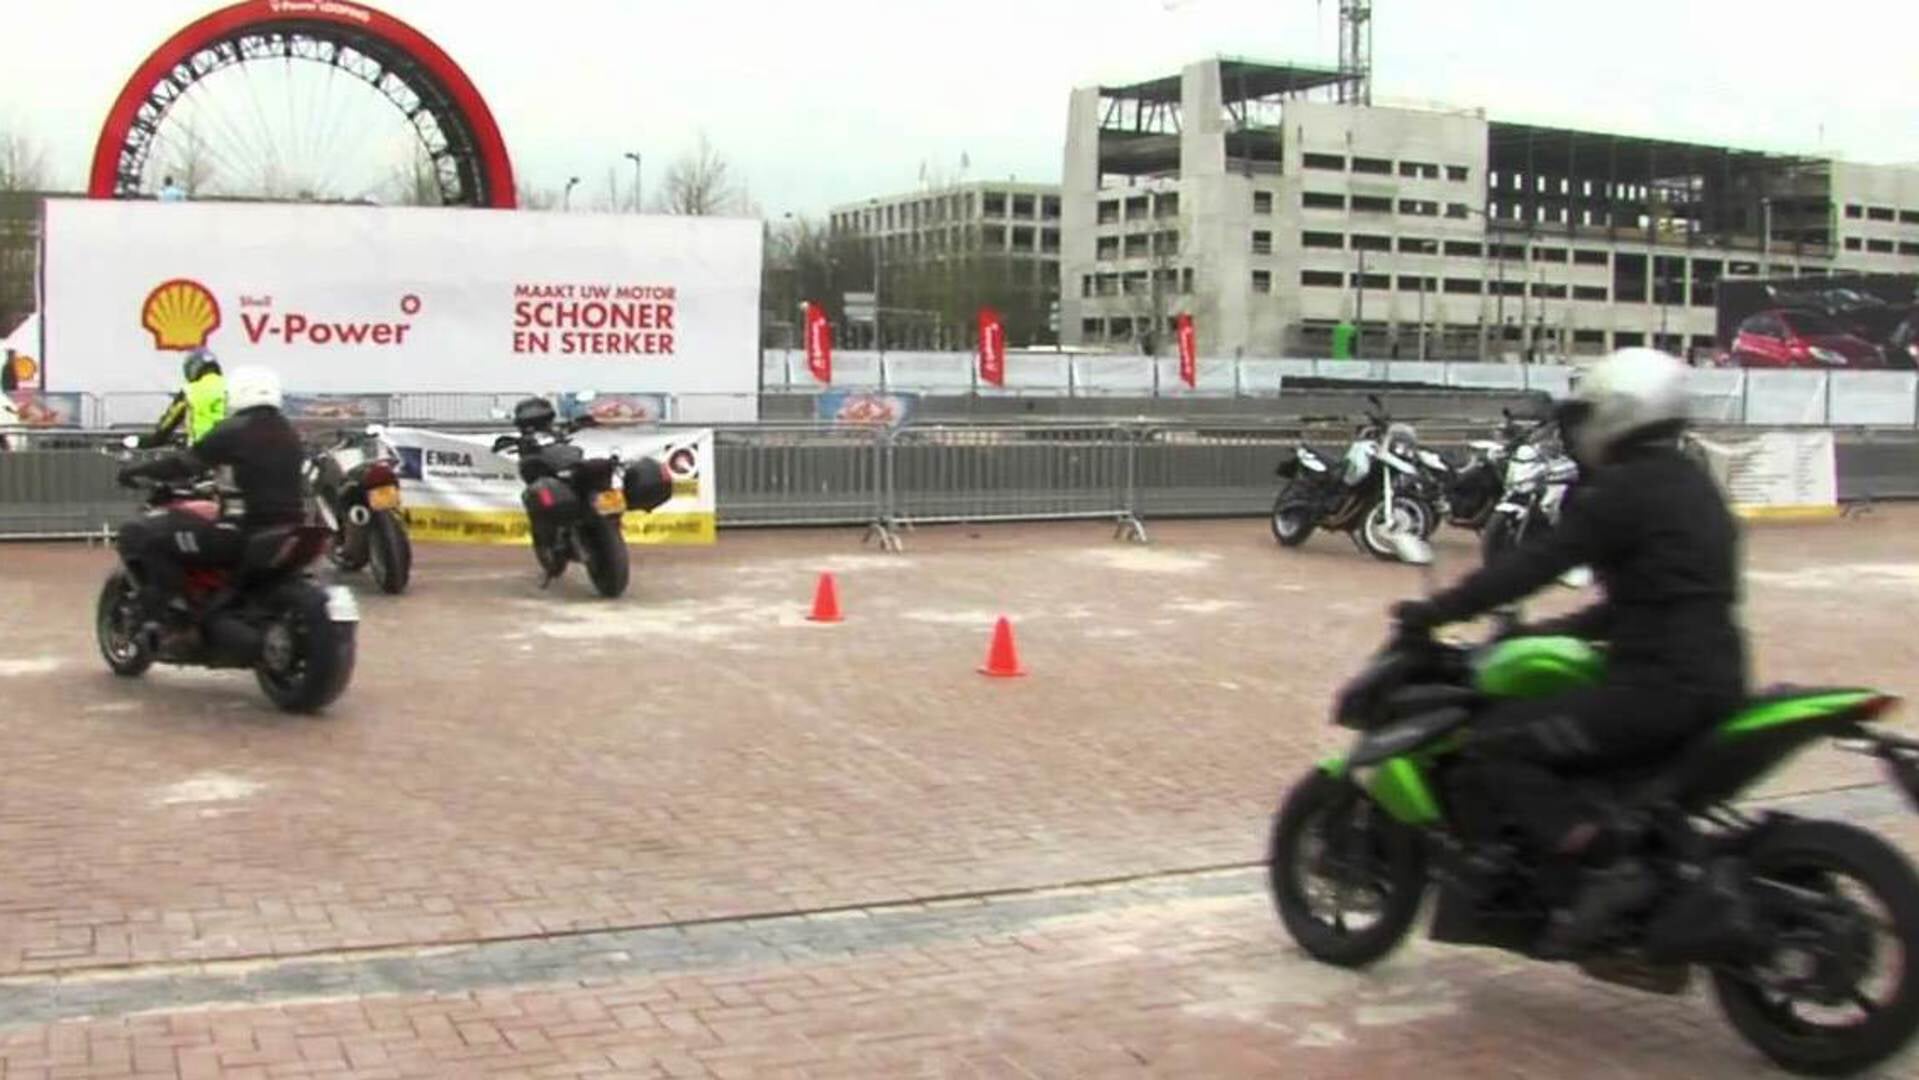 BOVAG Rijscholen heeft ook het event Try the Bike waarmee bezoekers van de MOTORbeurs worden getriggerd motorrijlessen te nemen.